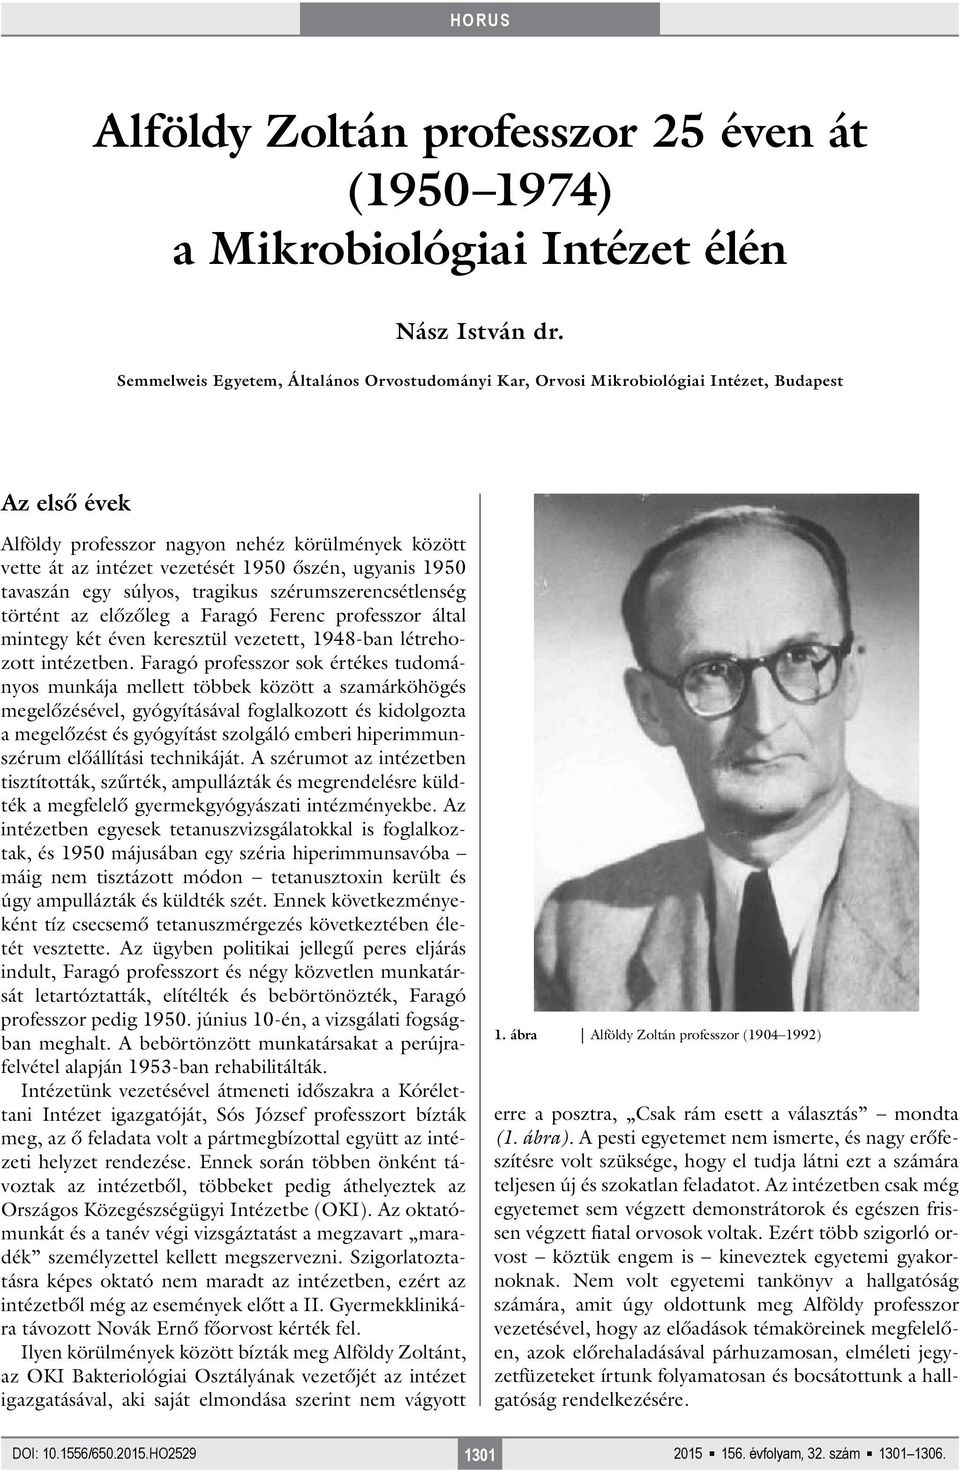 ugyanis 1950 tavaszán egy súlyos, tragikus szérumszerencsétlenség történt az előzőleg a Faragó Ferenc professzor által mintegy két éven keresztül vezetett, 1948-ban létrehozott intézetben.